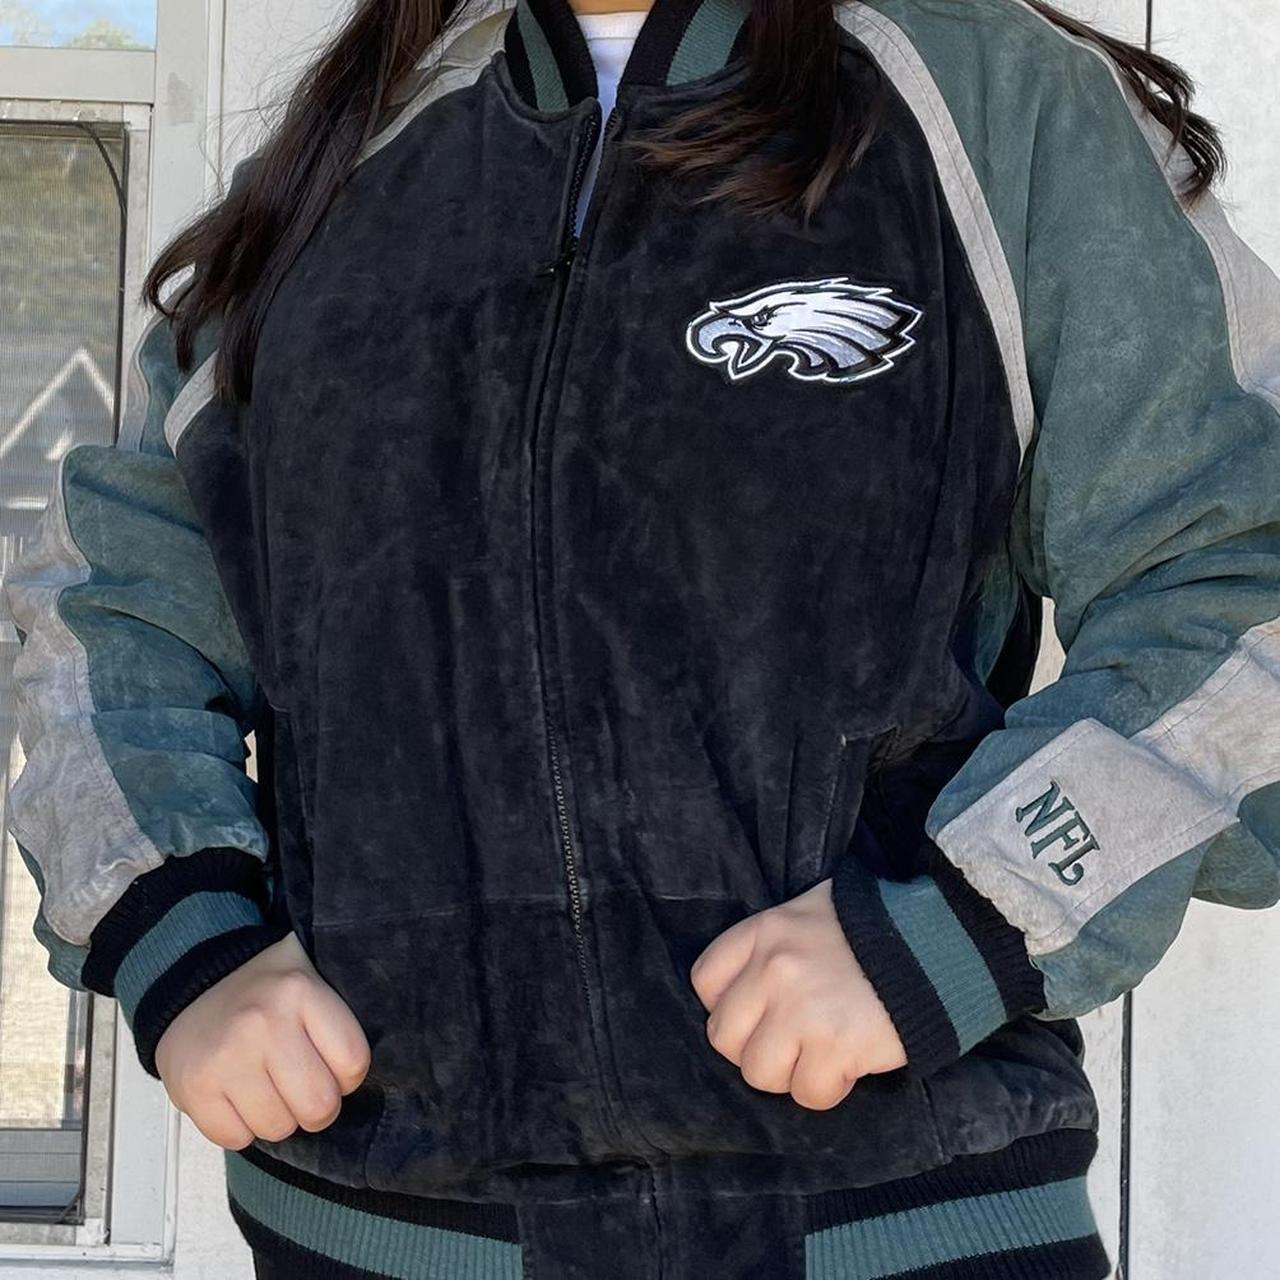 Philadelphia eagles leather jacket NFL large like new 100 dollars